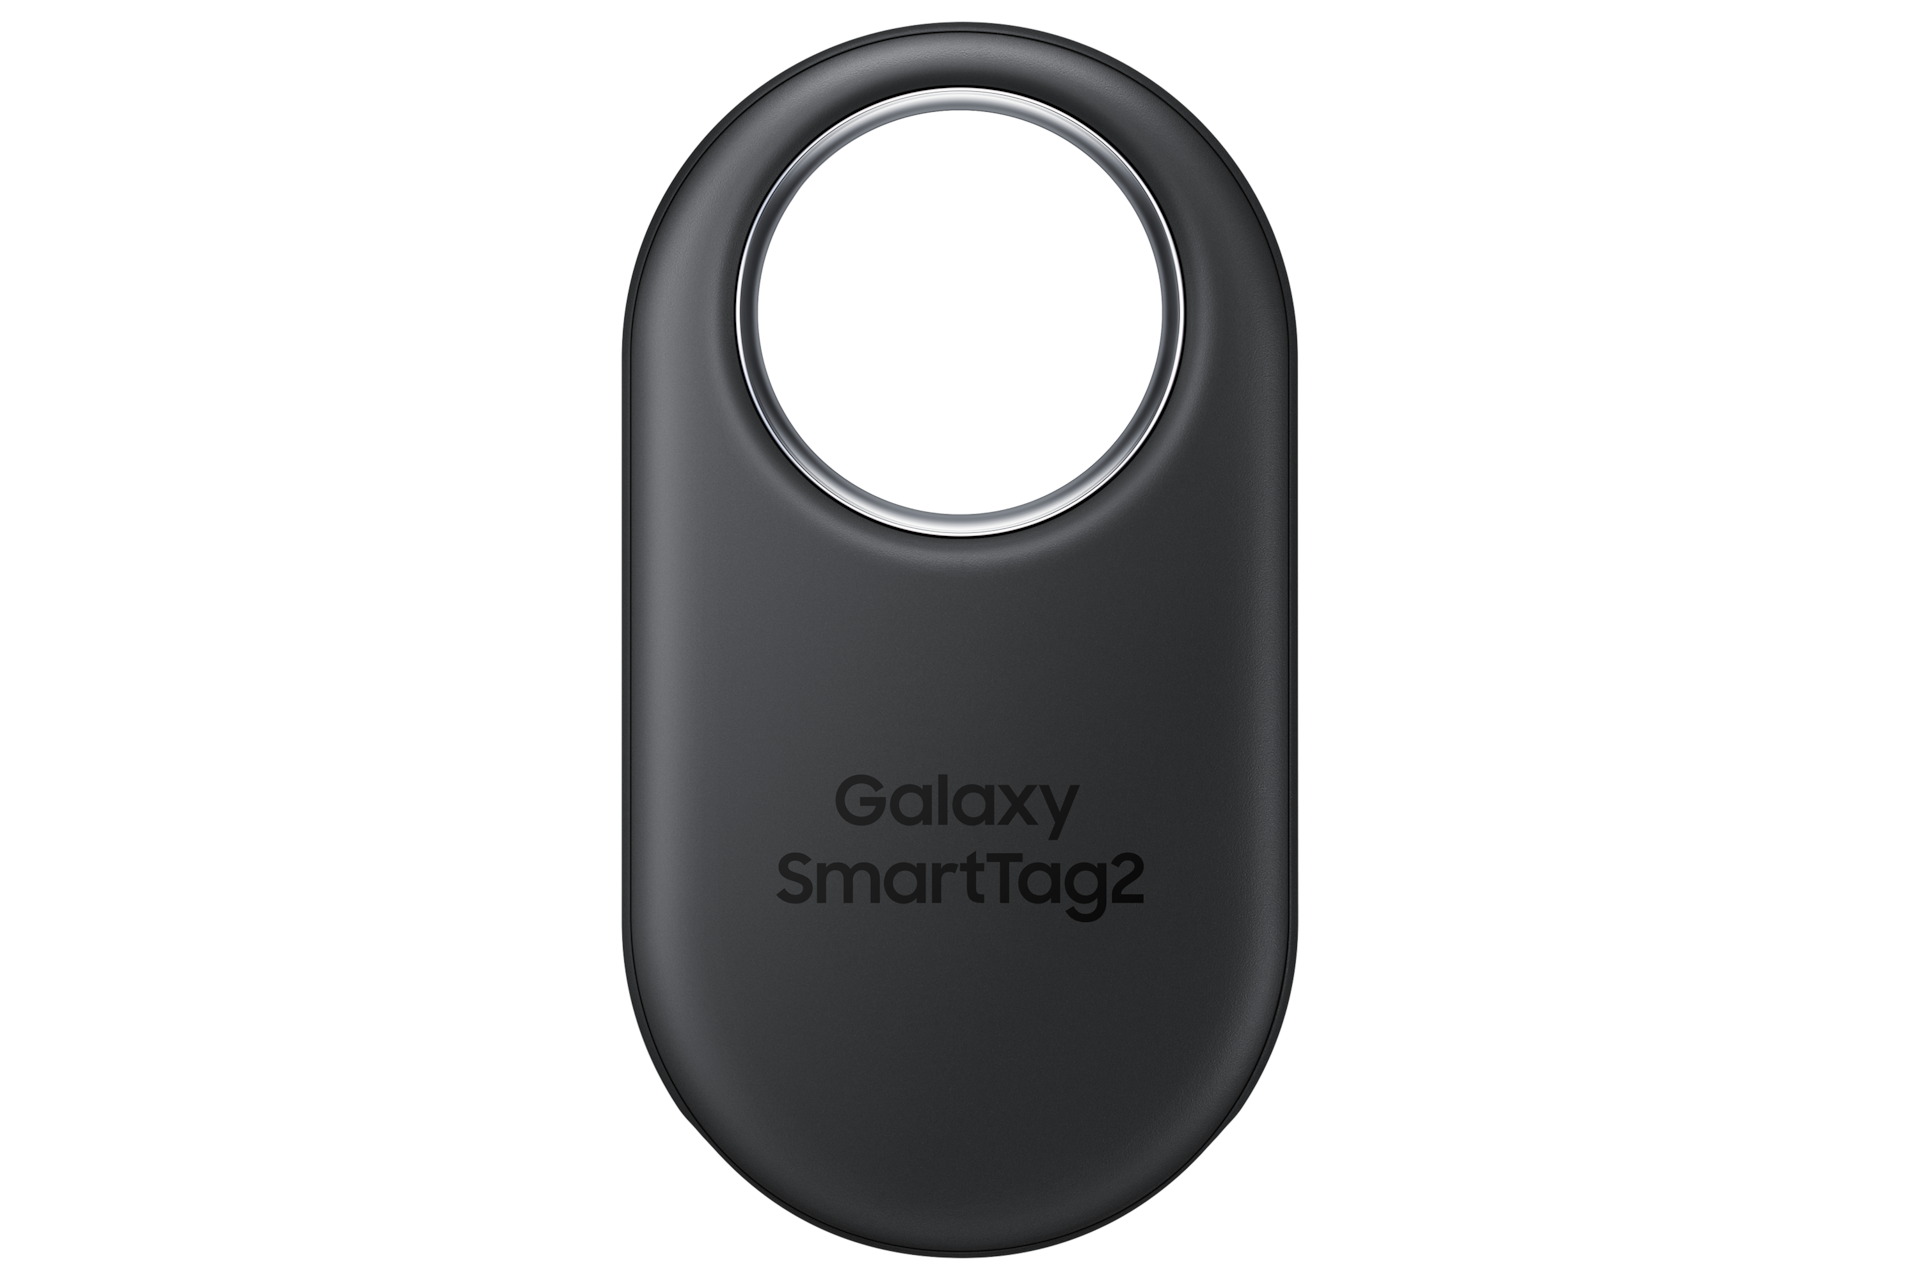 Lokalizator kluczy Samsung Galaxy SmartTag2 w kolorze czarnym - widok z przodu